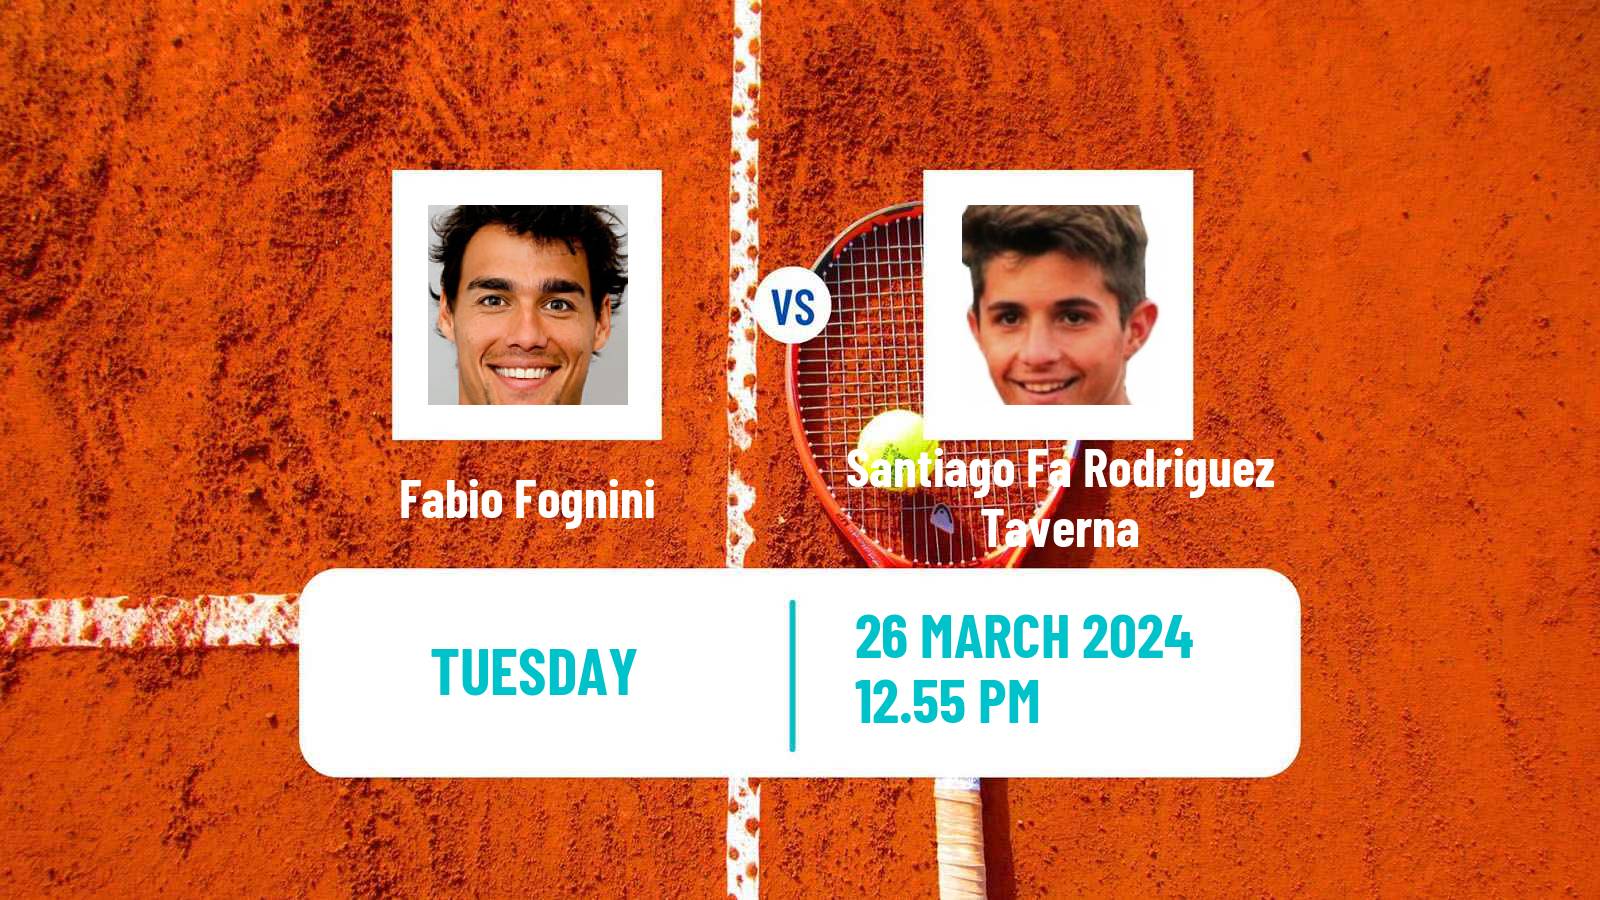 Tennis Naples 3 Challenger Men Fabio Fognini - Santiago Fa Rodriguez Taverna